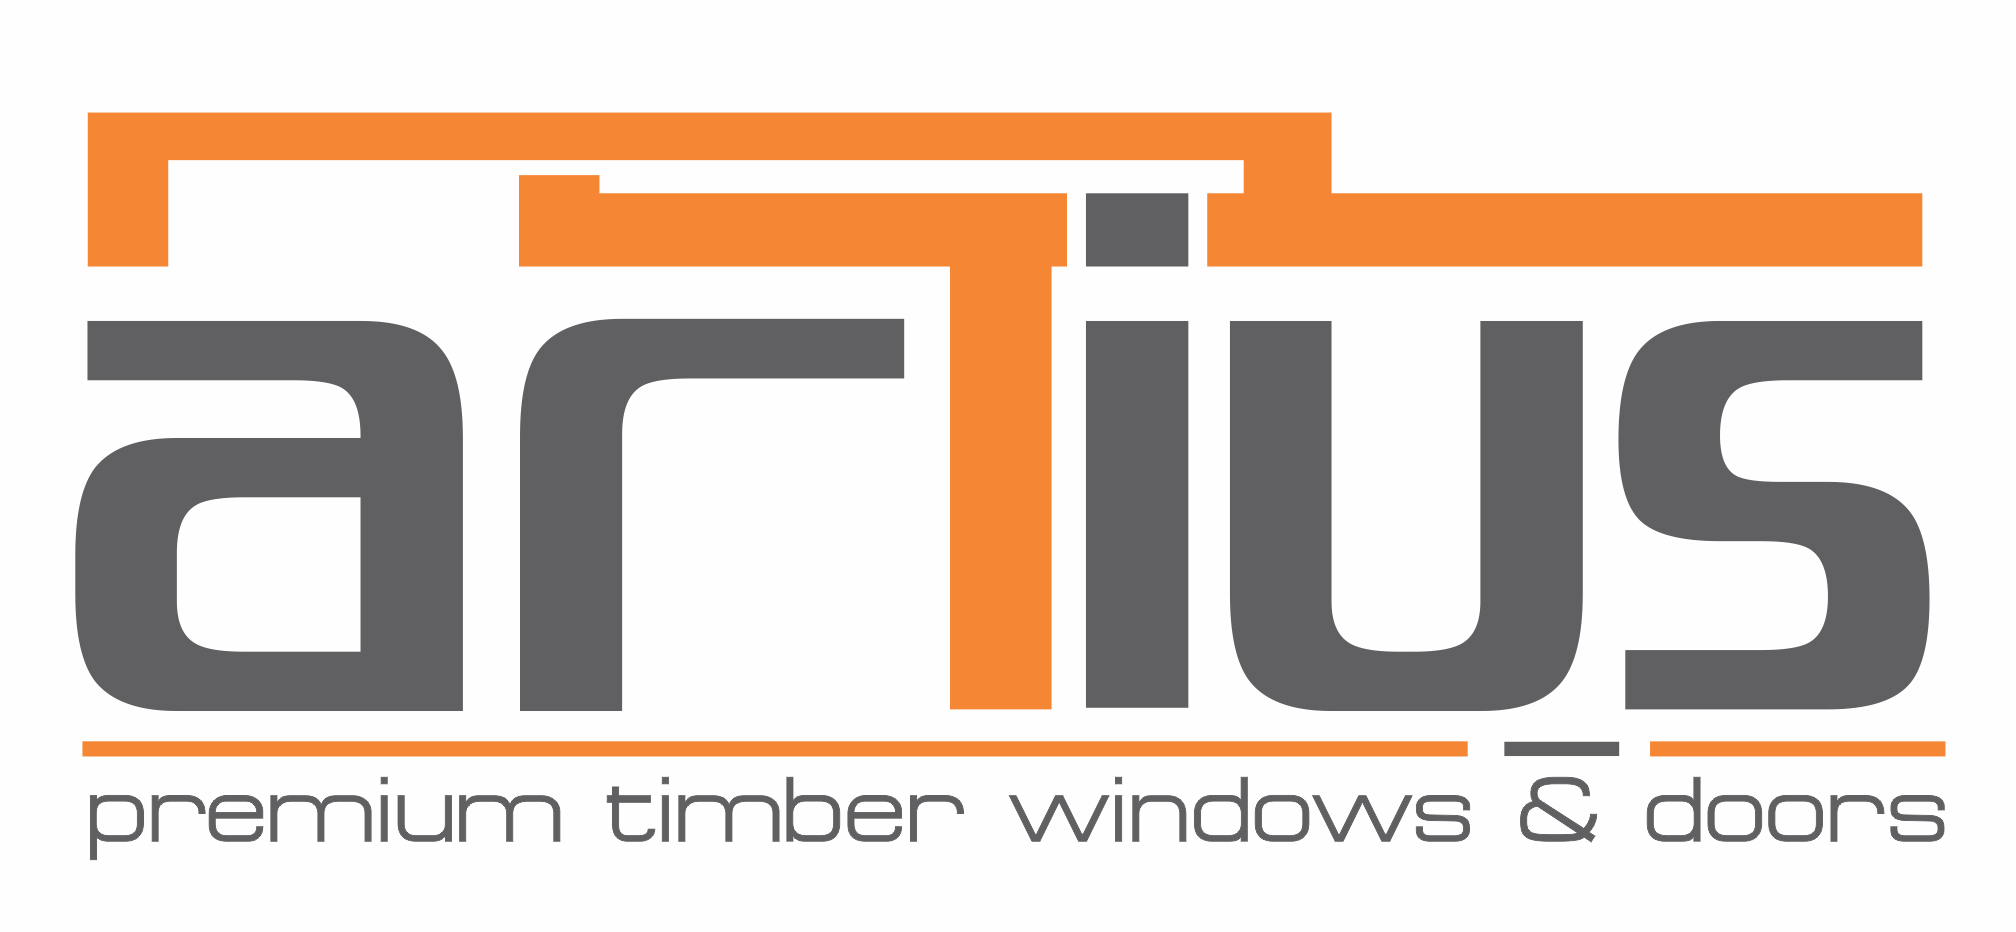 Artius Premium Wooden Doors & Windows